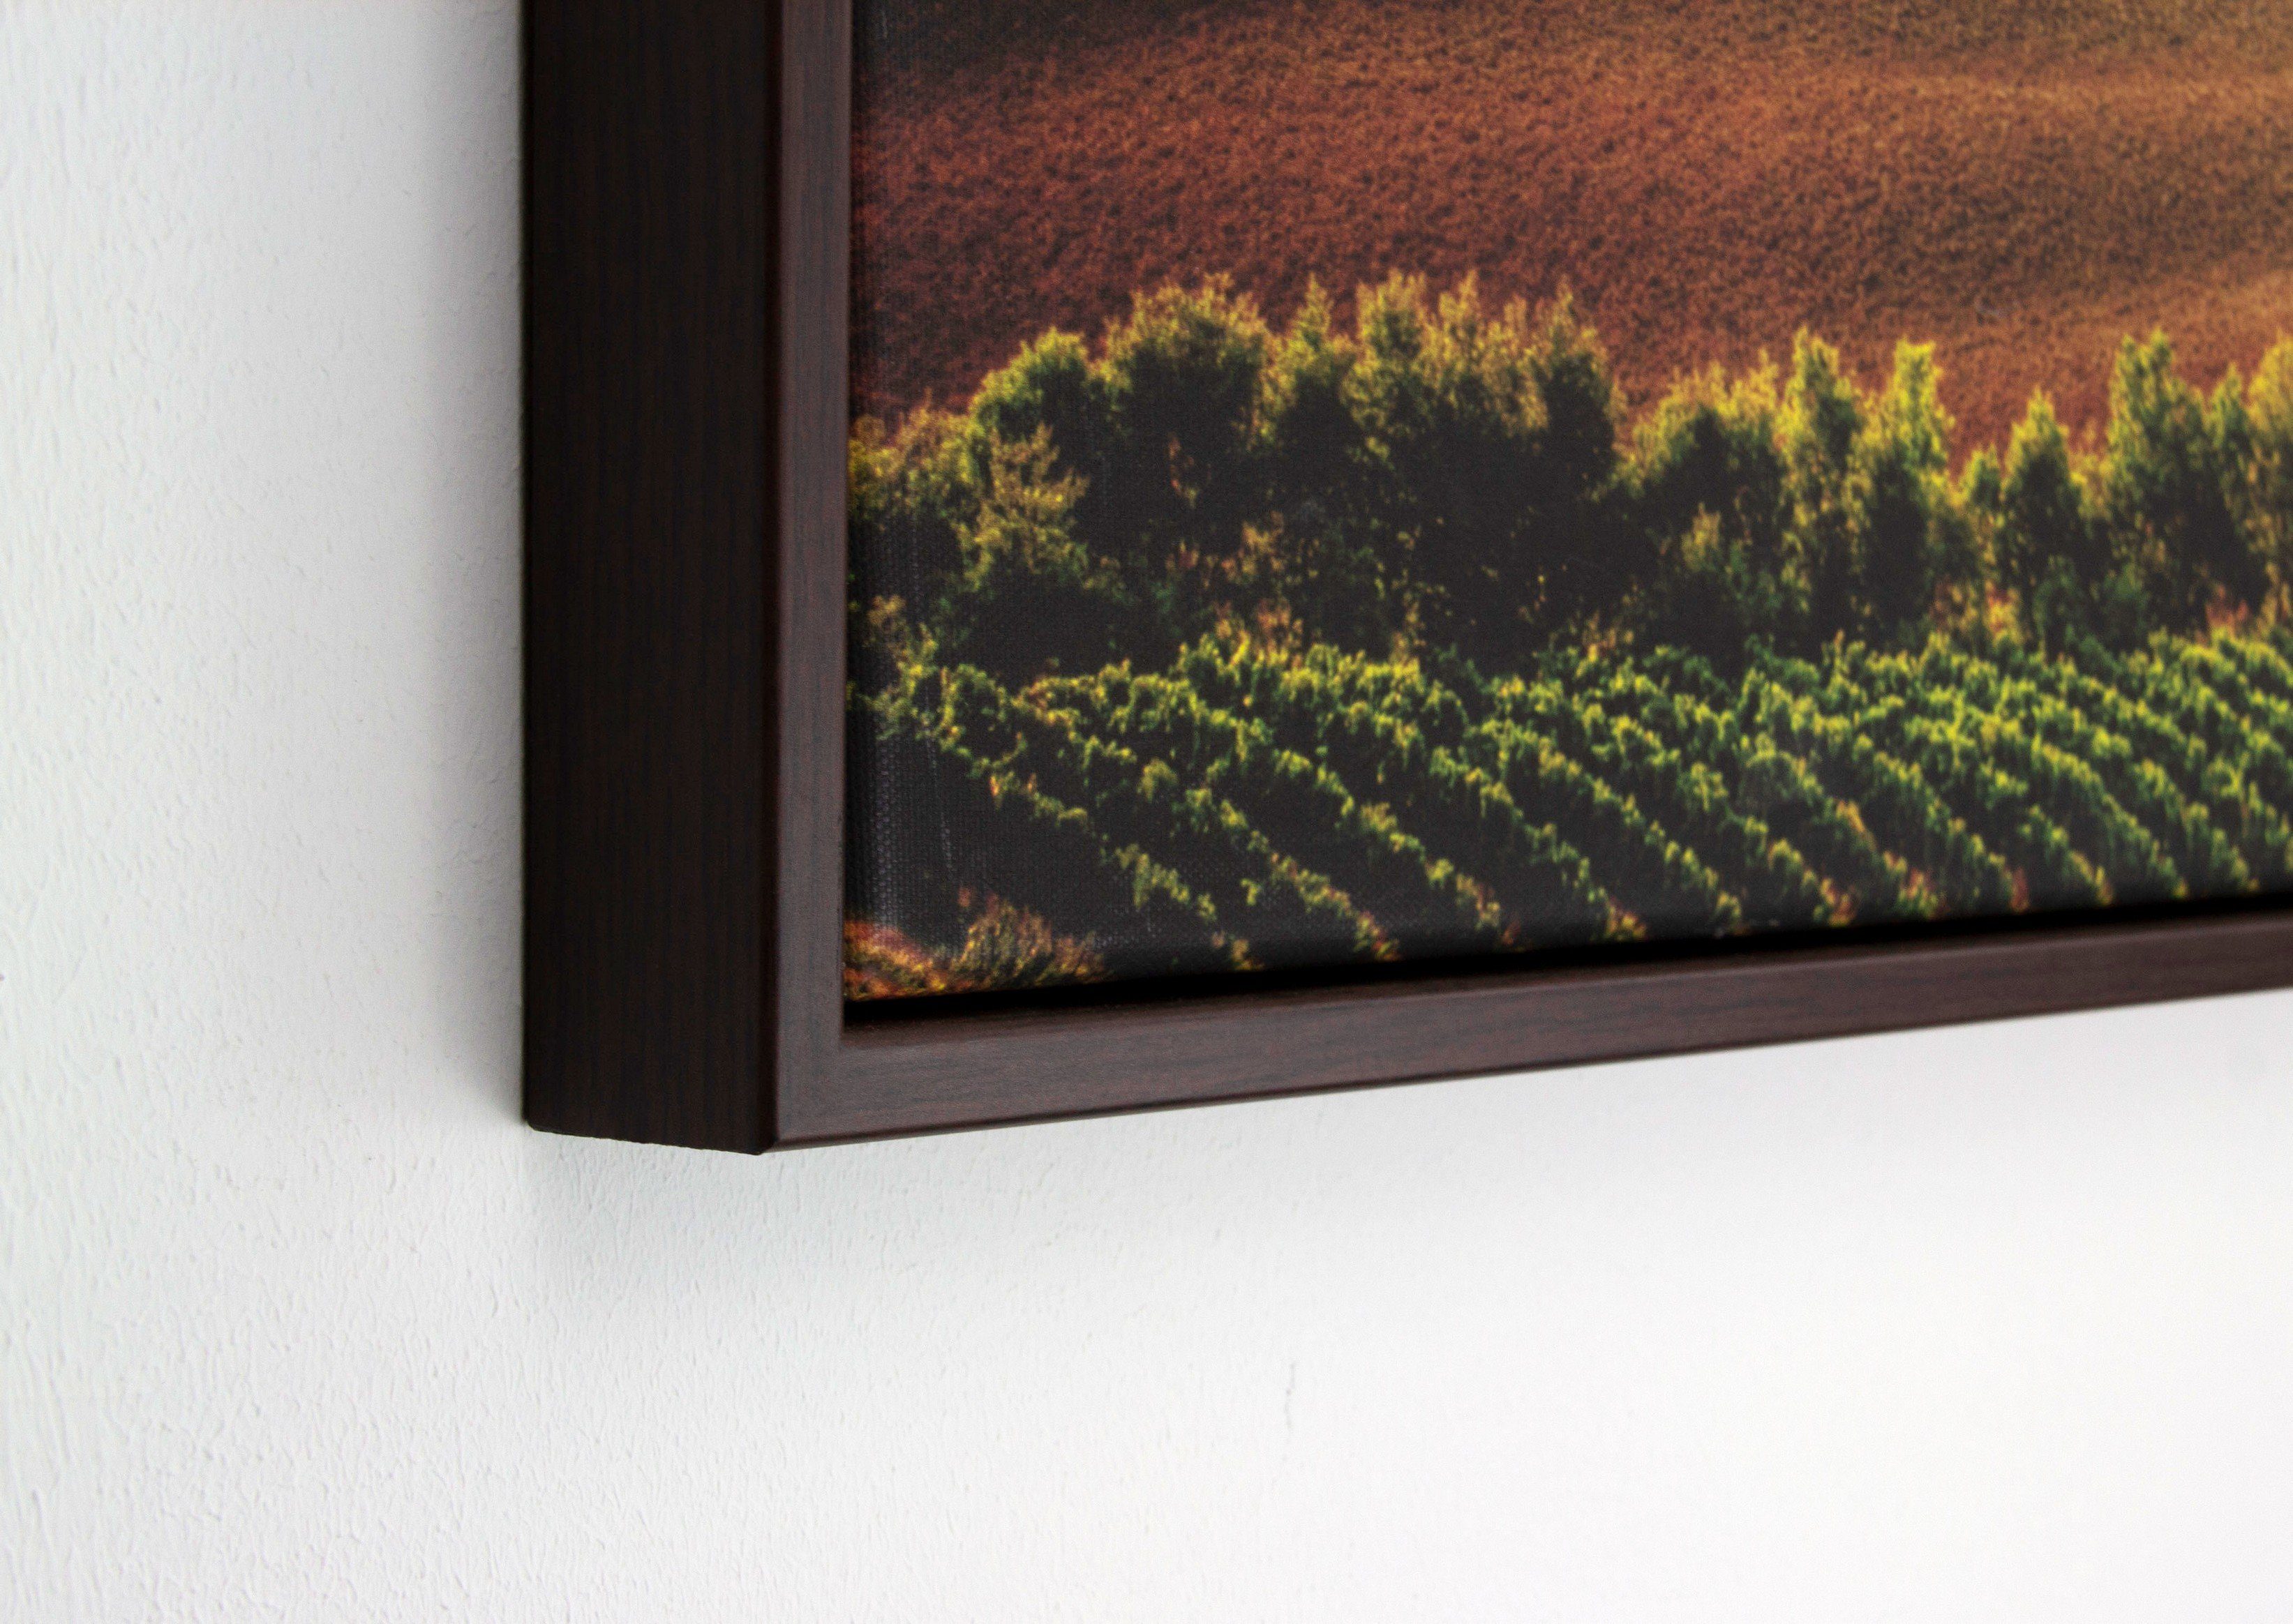 Einzelrahmen Eris, Leinwandbild Eiche myposterframe für Canvas 18x24 cm, Stück), (1 Leerrahmen Dunkel Schattenfuge